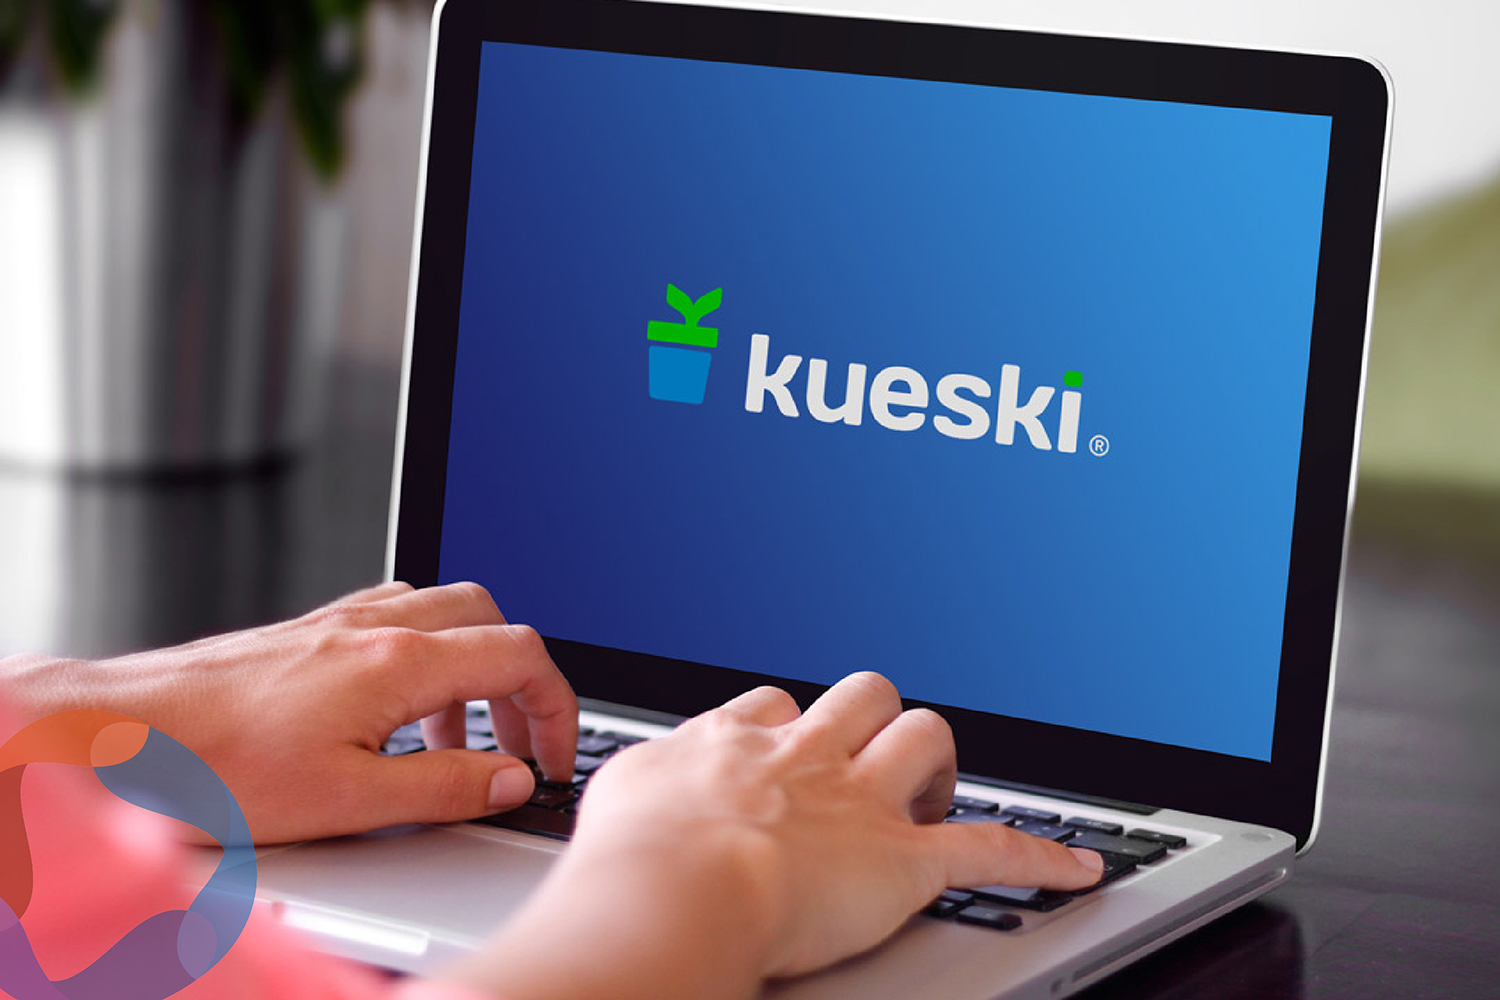 Kueski llega a 35,000 mdp en préstamos y 12 millones de créditos